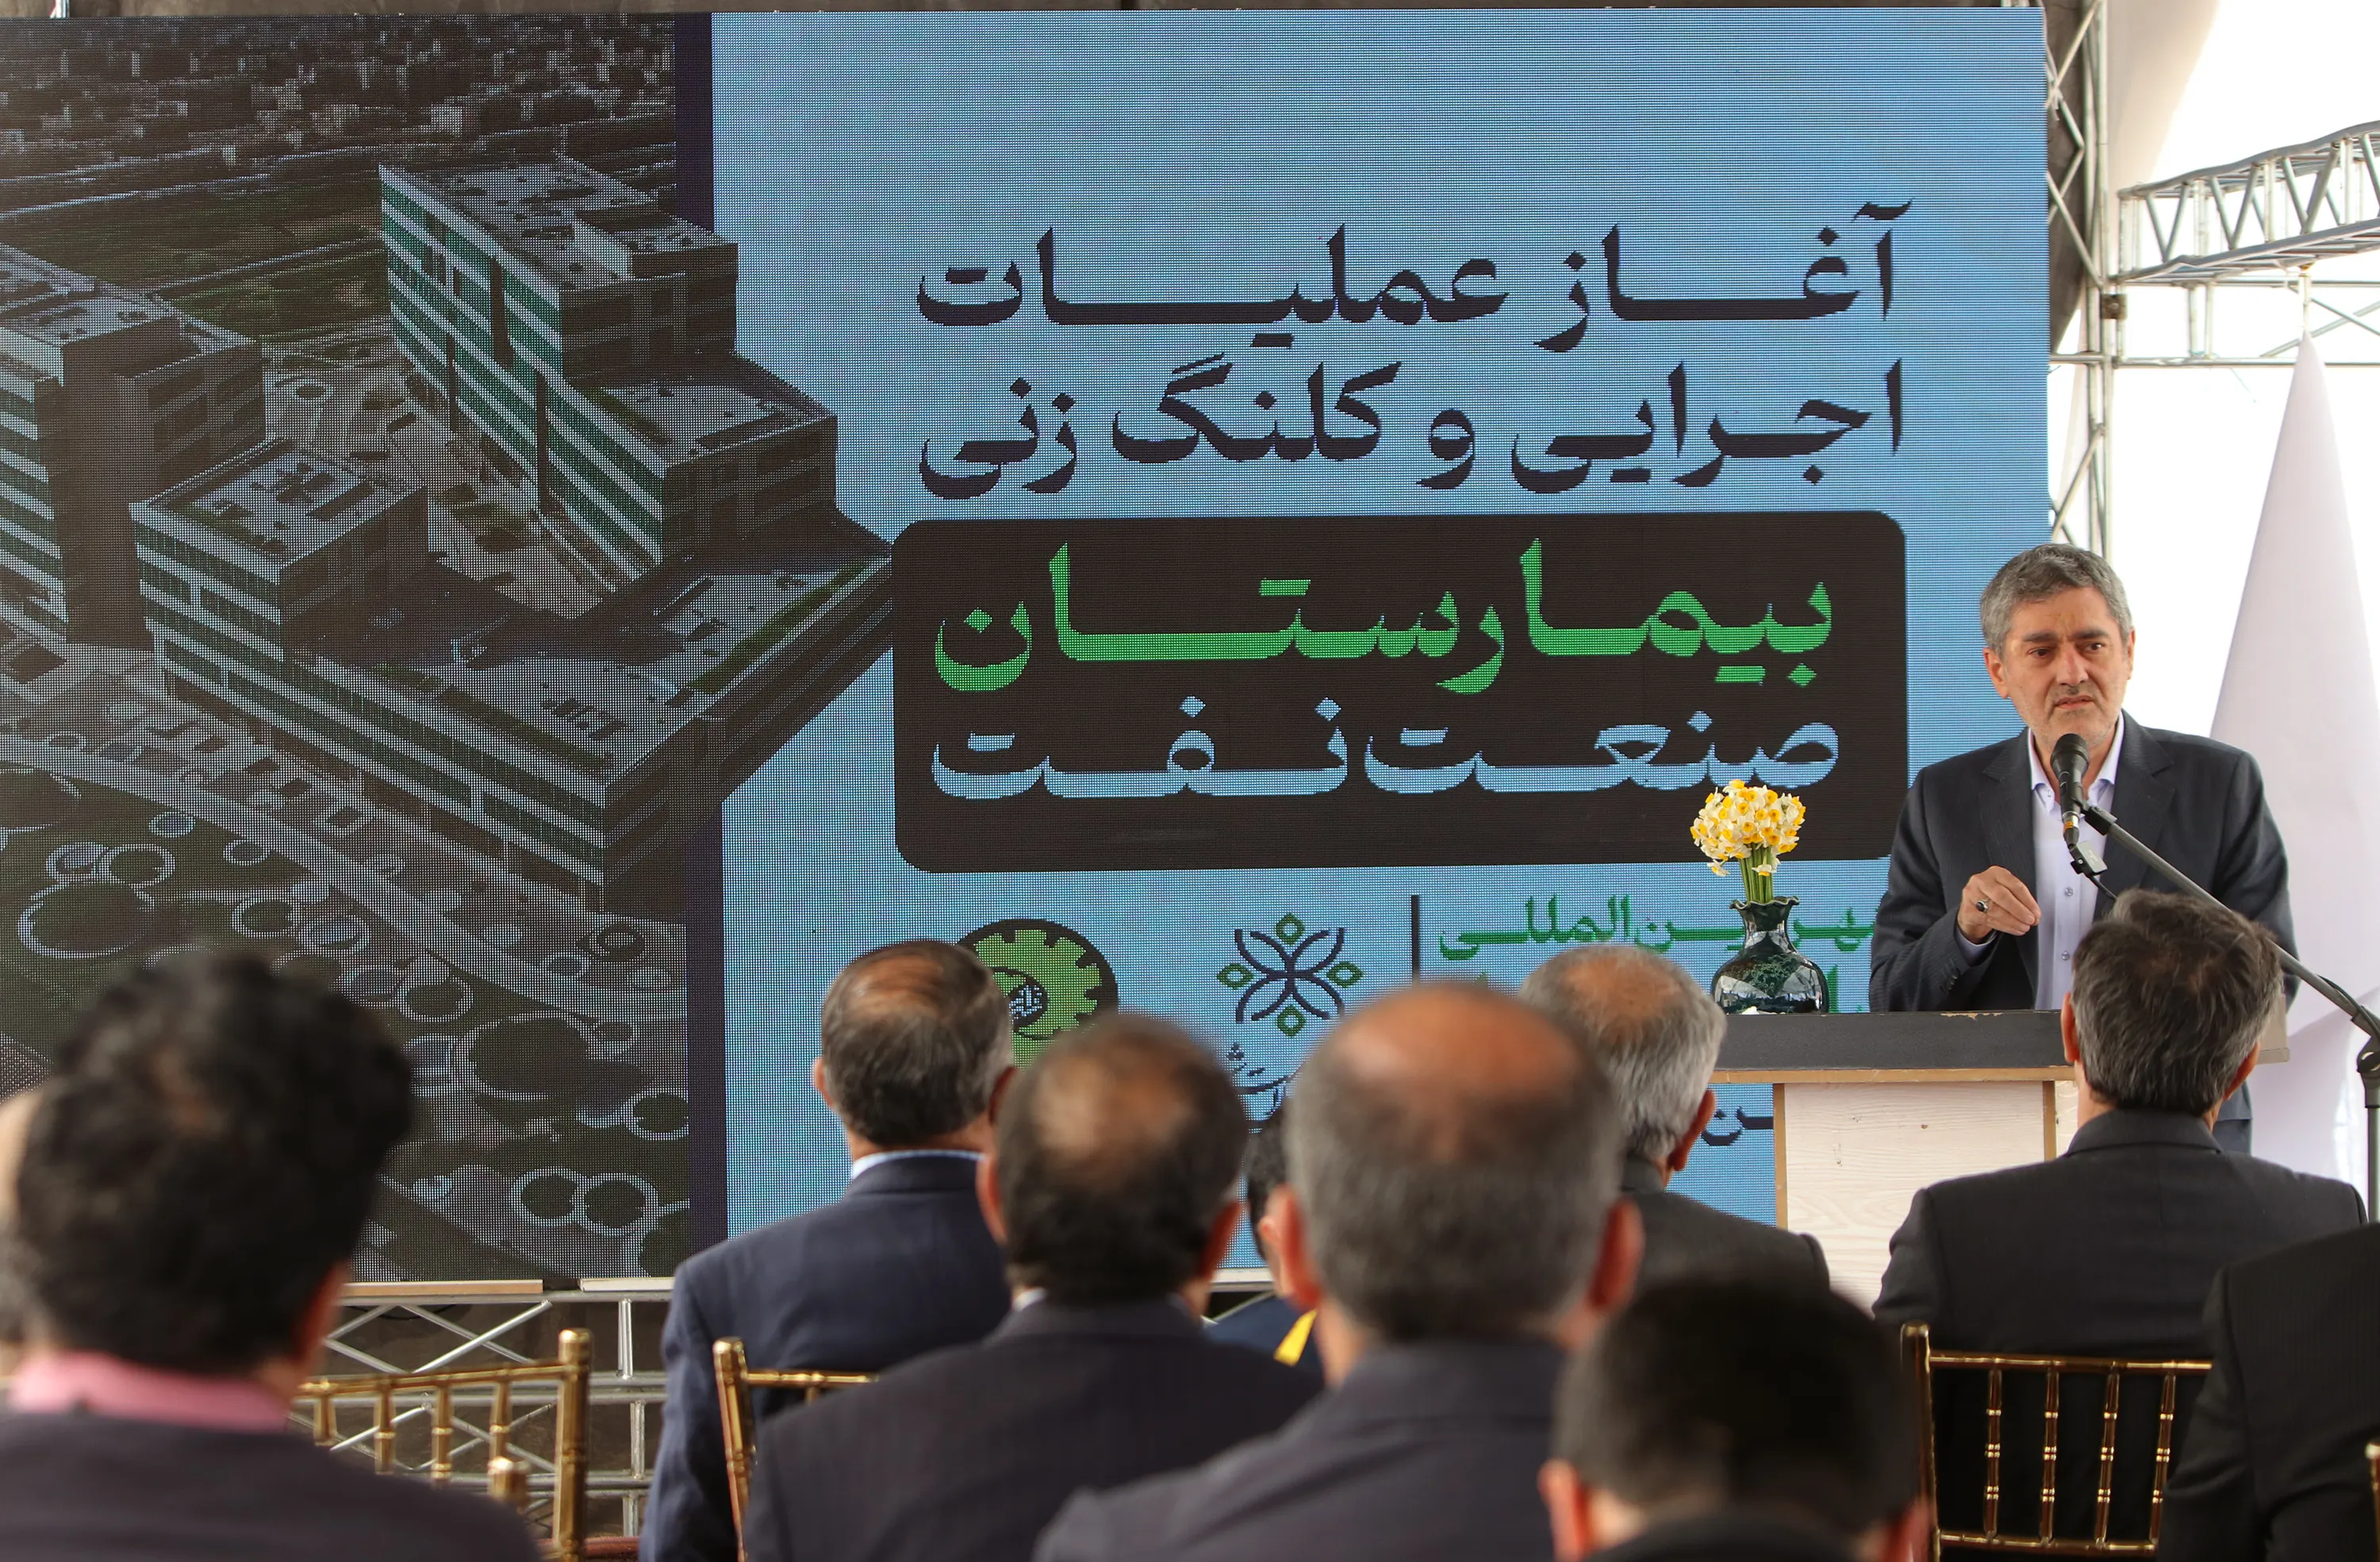  کلنگ بیمارستان صنعت نفت فارس در شهر بین المللی سلامت شیراز به زمین خورد